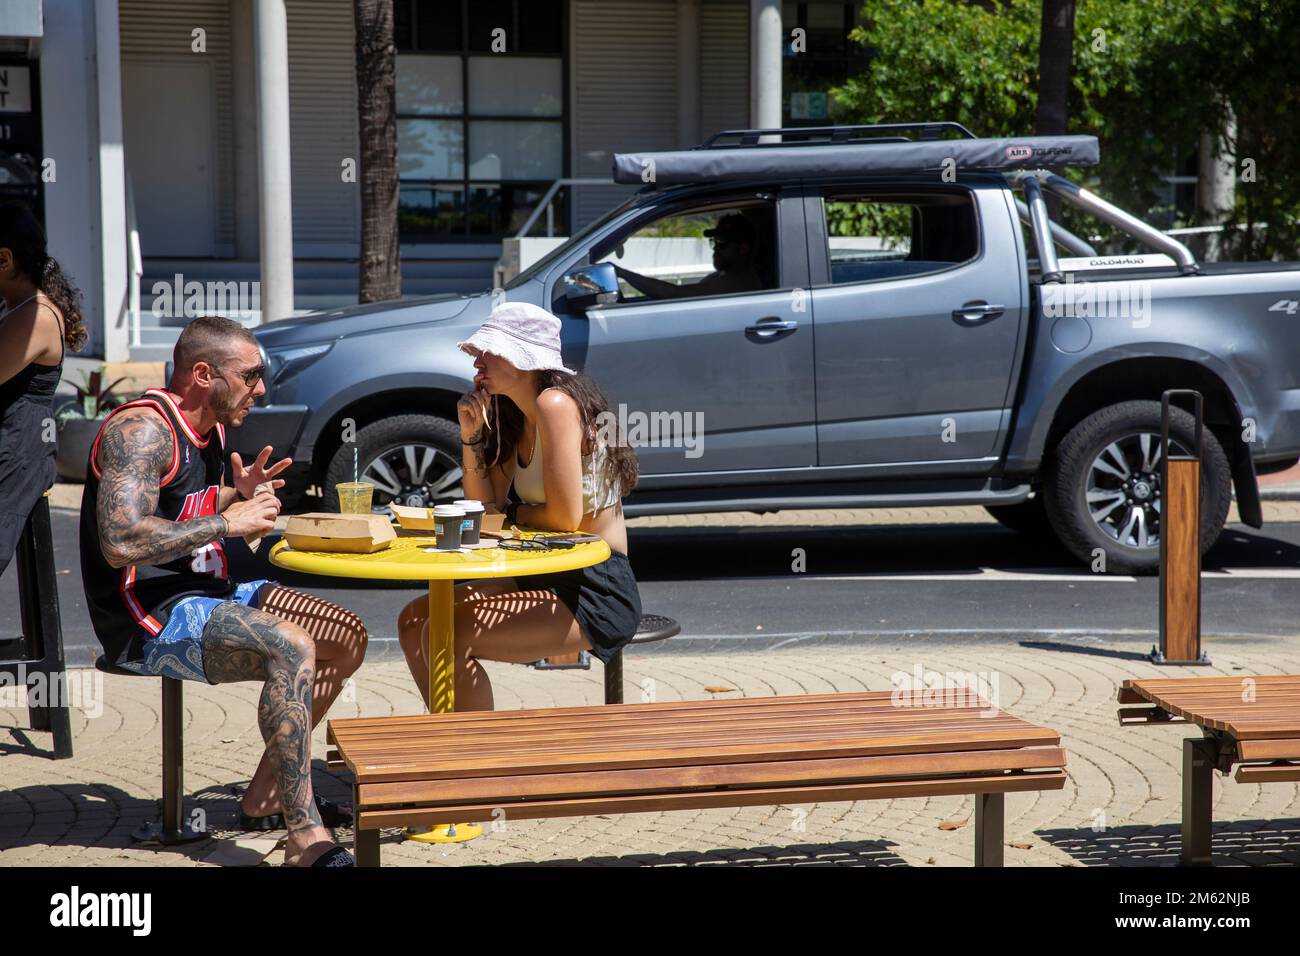 Couple dehors ayant un café à Avalon Beach café, l'homme est fortement tatoué sur le bras droit et la jambe, jeune femme n'a pas de tatouages, Sydney, NSW, Australie Banque D'Images